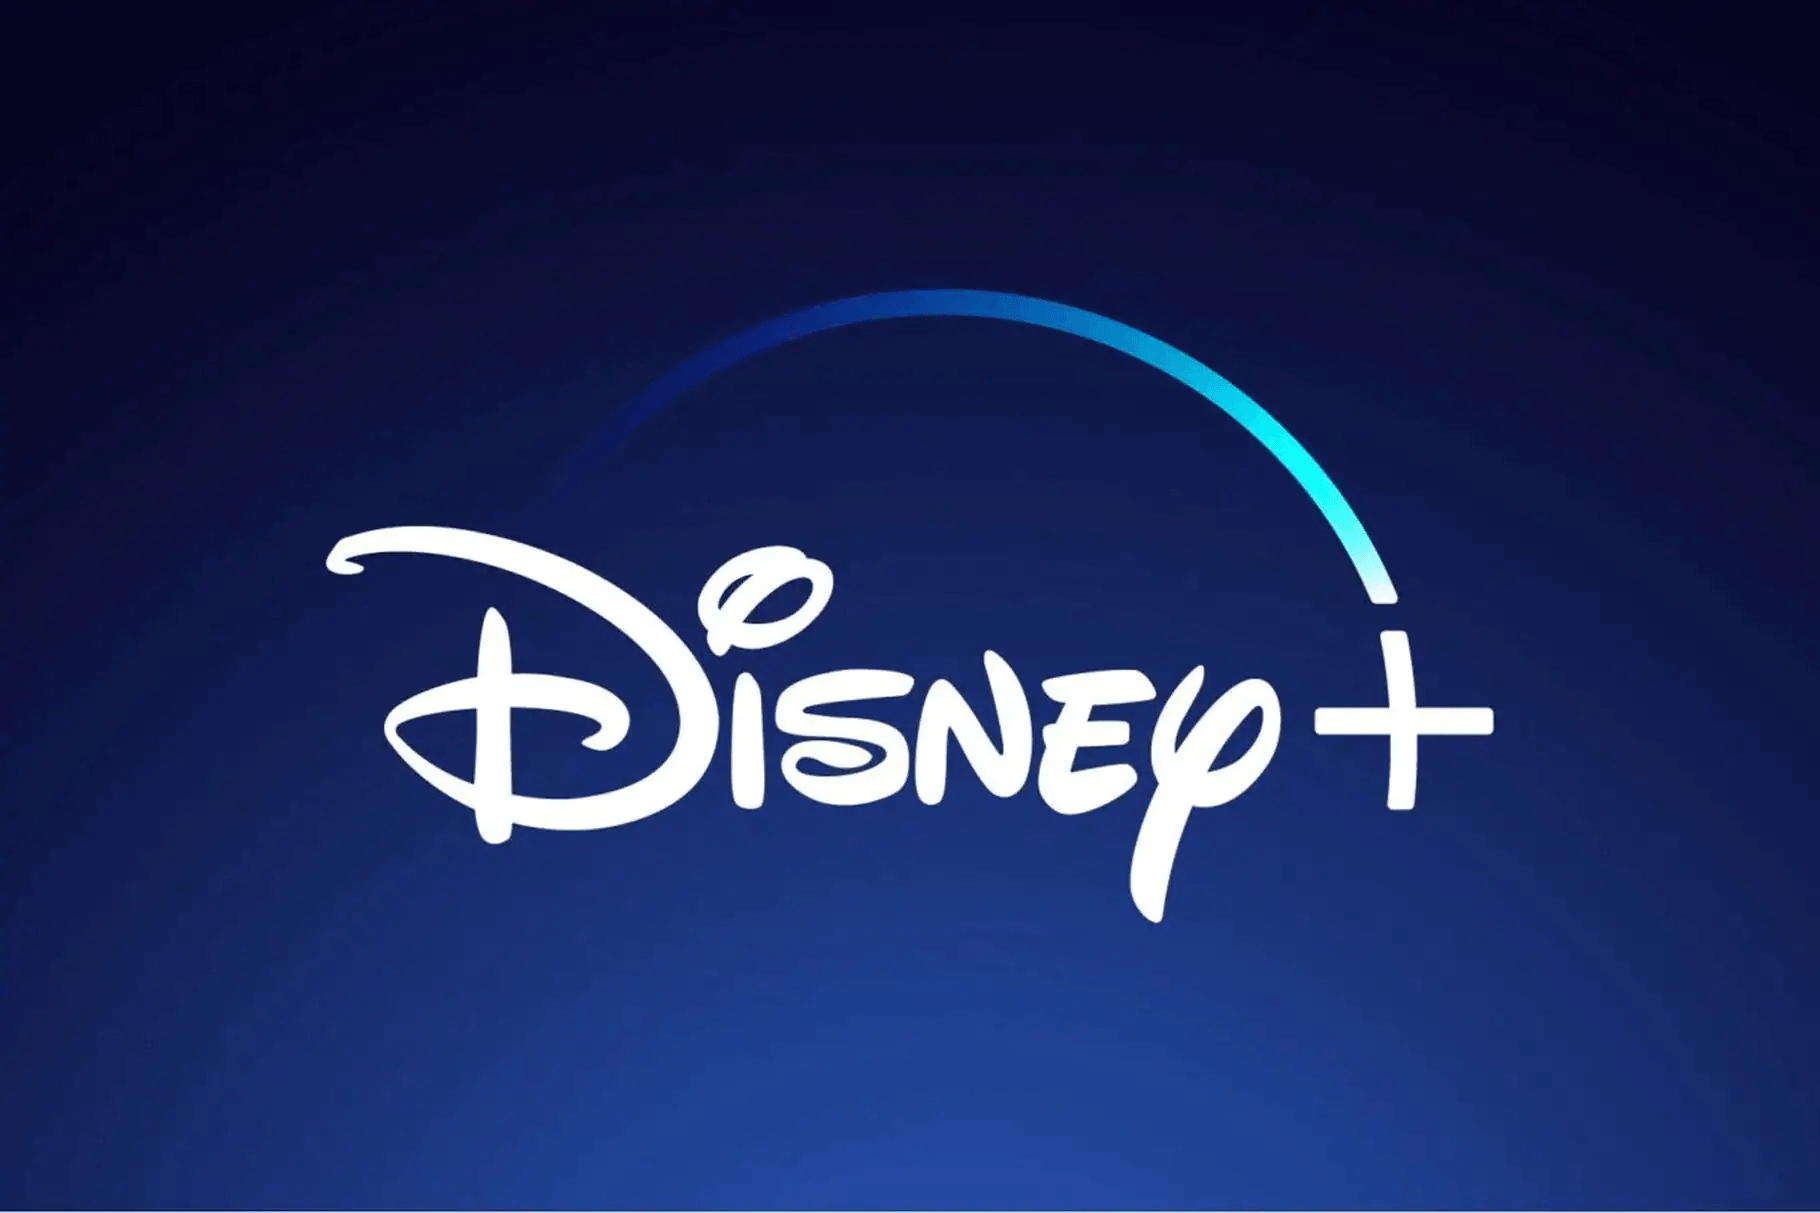 Am 23. März startet in Deutschland der neue Streaming-Dienst Disney+. Jetzt hat der Unterhaltungsriese eine Auswahl der Filme, Serien und Eigenproduktionen veröffentlicht, die dort zu sehen sein werden.